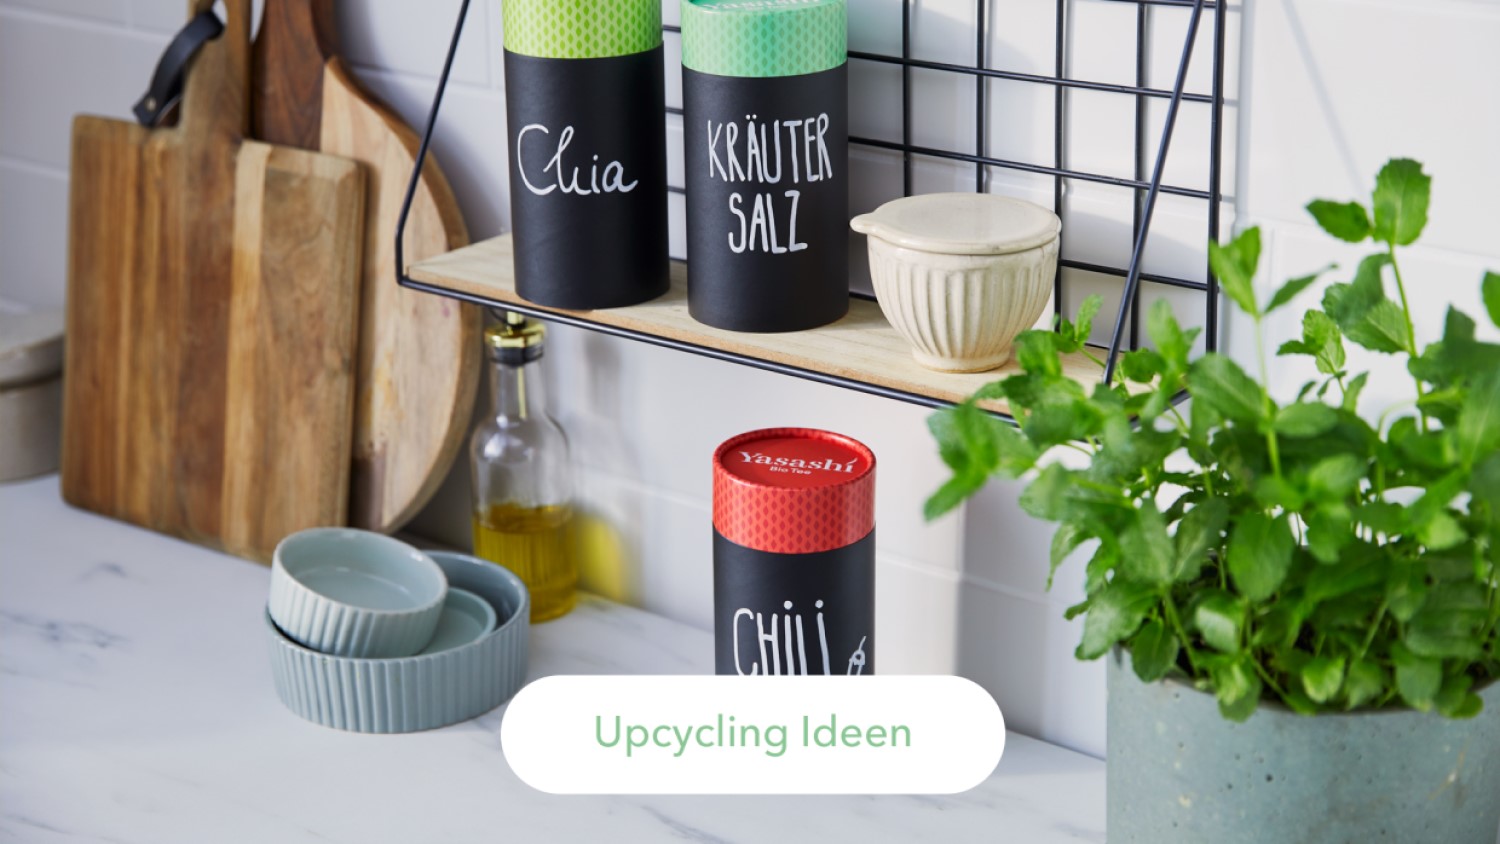 Yasashí Upcycling Ideen für die leeren Teedosen. Behälter für Chia Samen, Kräuter Salz oder Chili zum Beispiel.